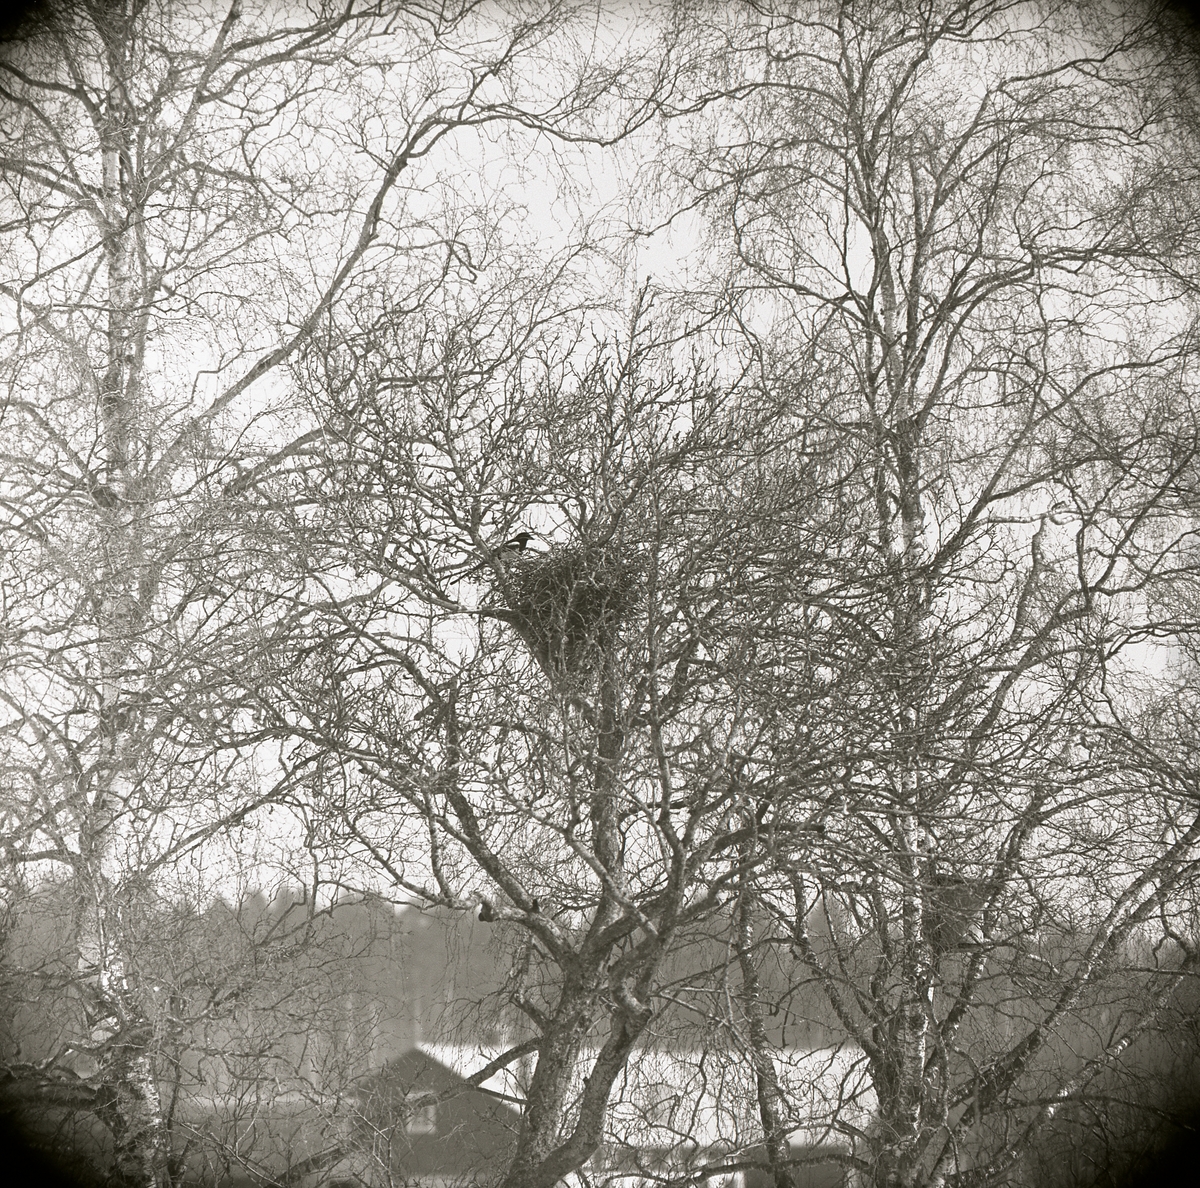 Skata vid ett gammalt kråkbo i äppelträd, byggnad i bakgrunden, 1969.